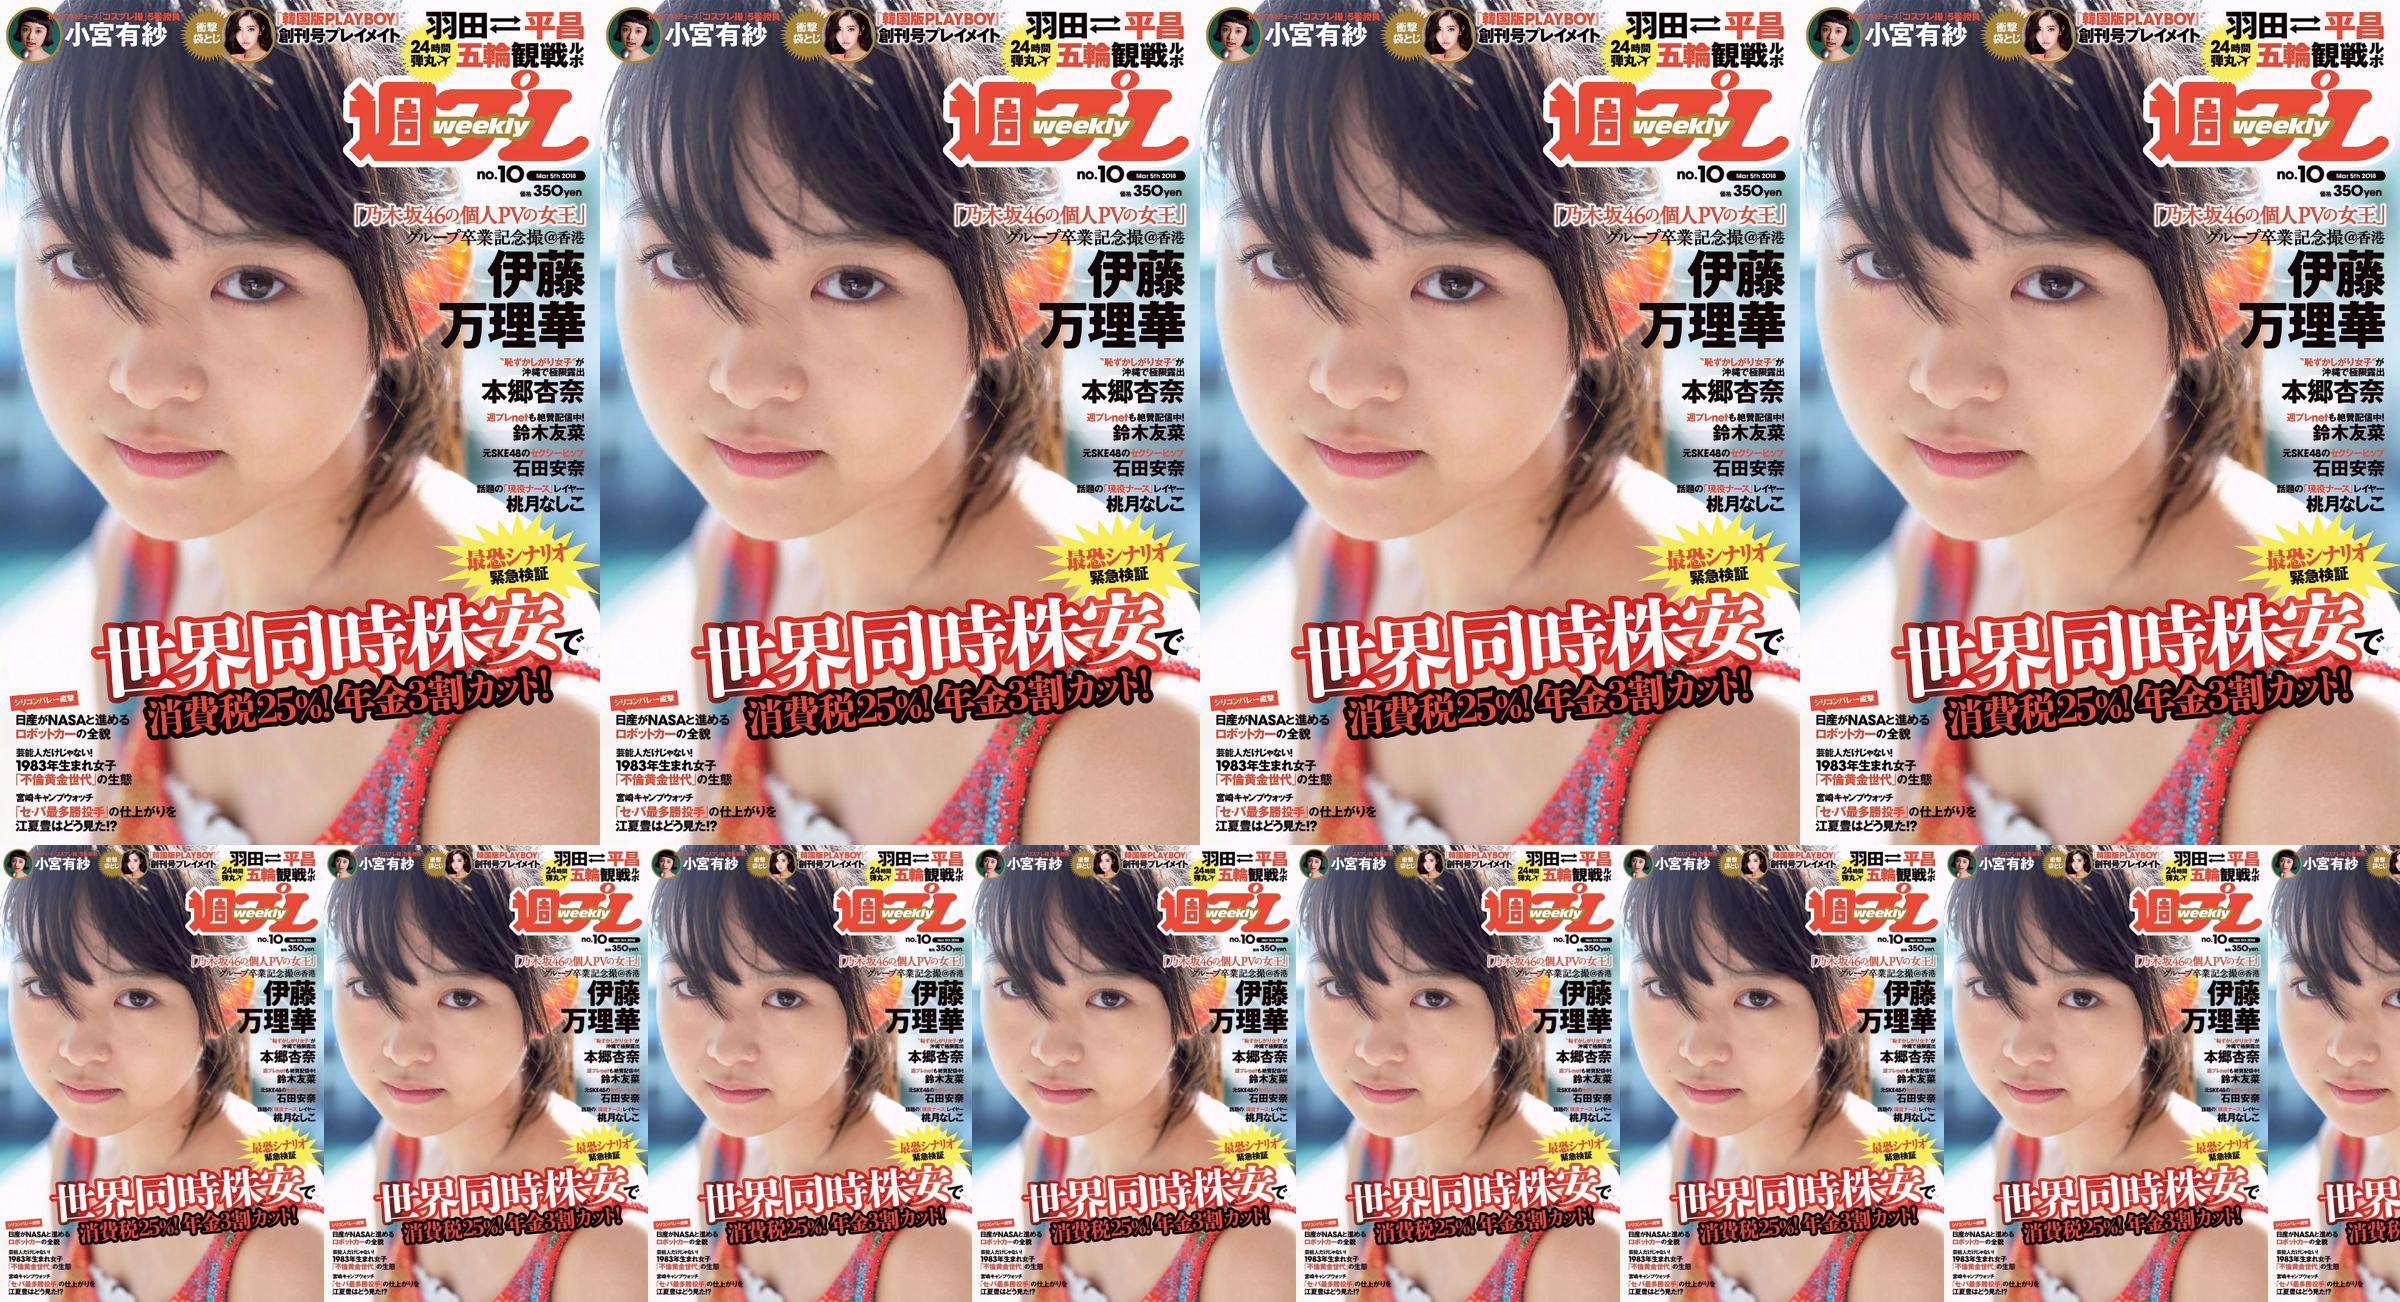 Marika Ito Yuuna Suzuki Anna Ishida Anna Hongo Nashiko Momotsuki Arisa Komiya Aoi Tsukasa Lee Young-hwa [Wöchentlicher Playboy] 2018 Nr. 10 Foto No.2bad8e Seite 1